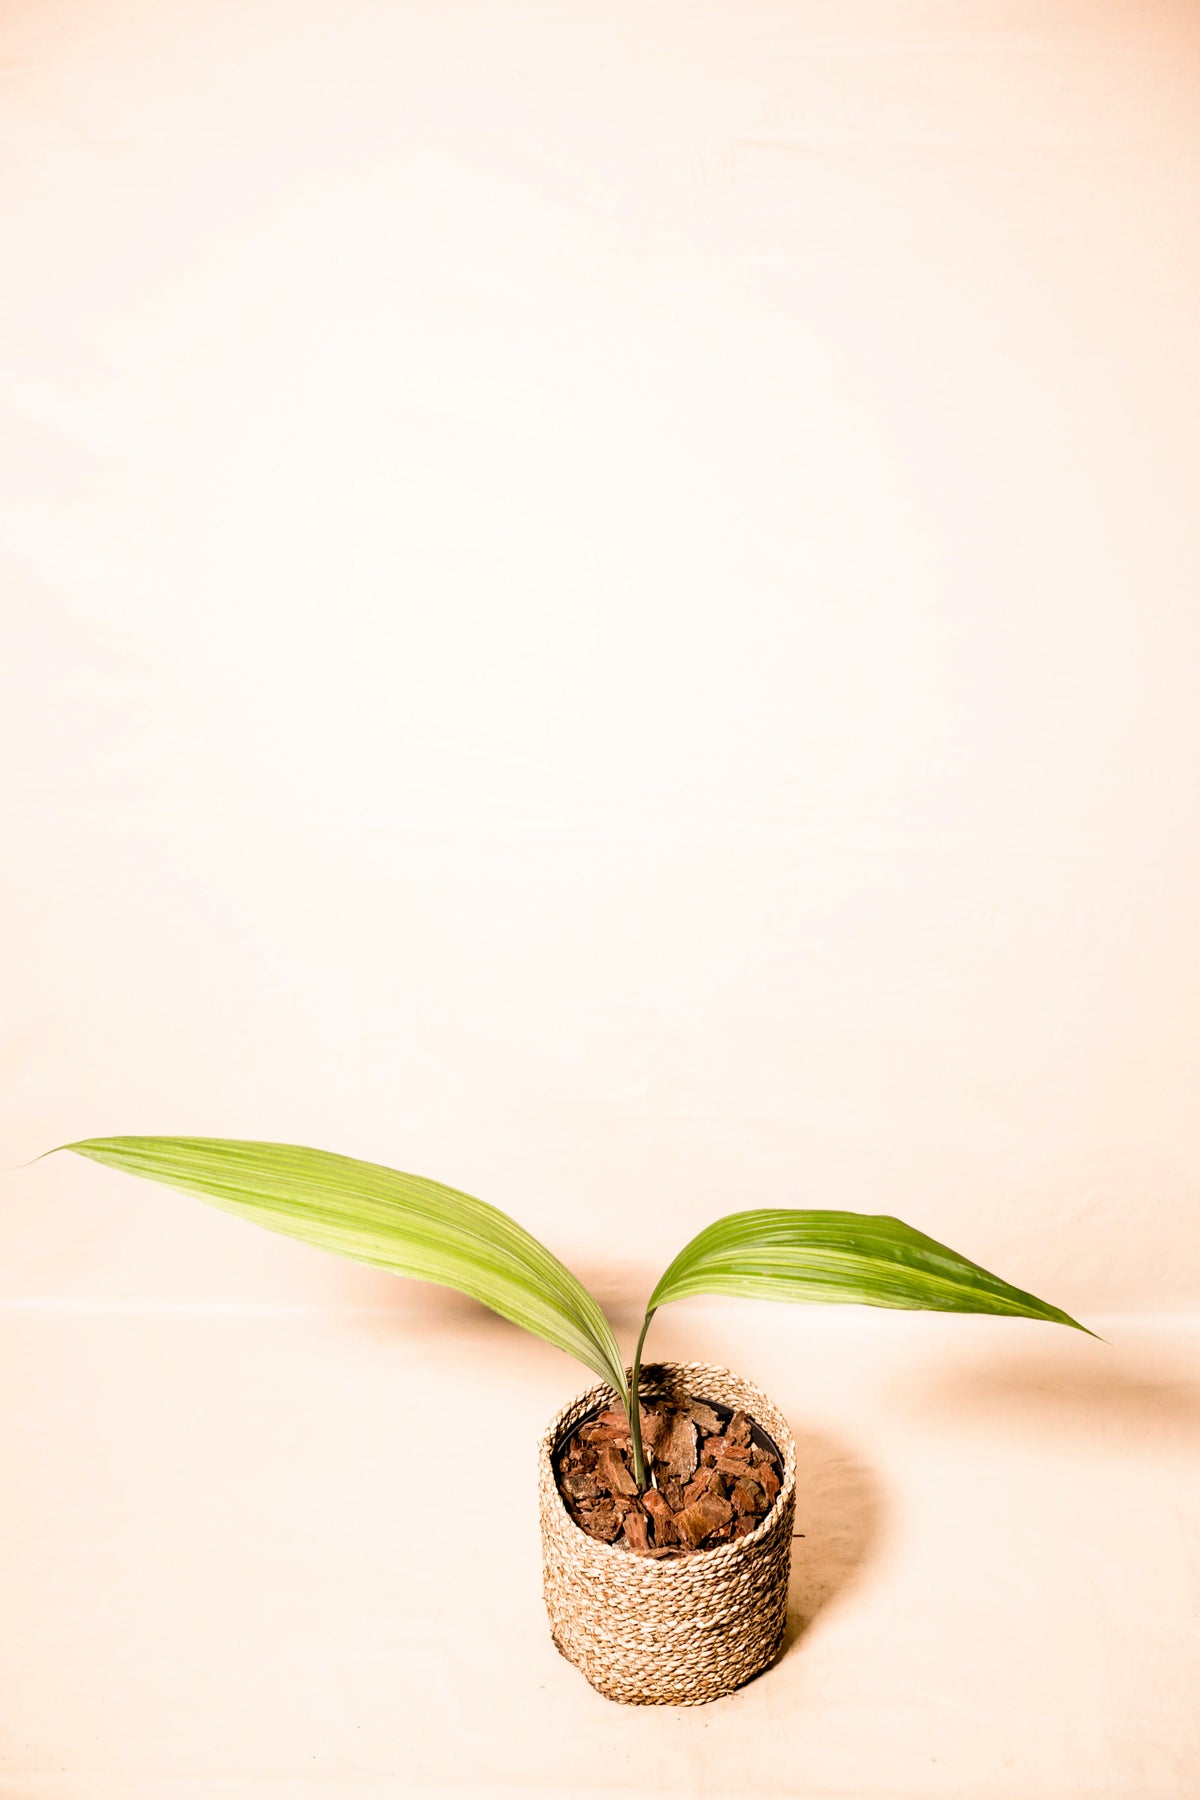 Curculigo latifolia variegata